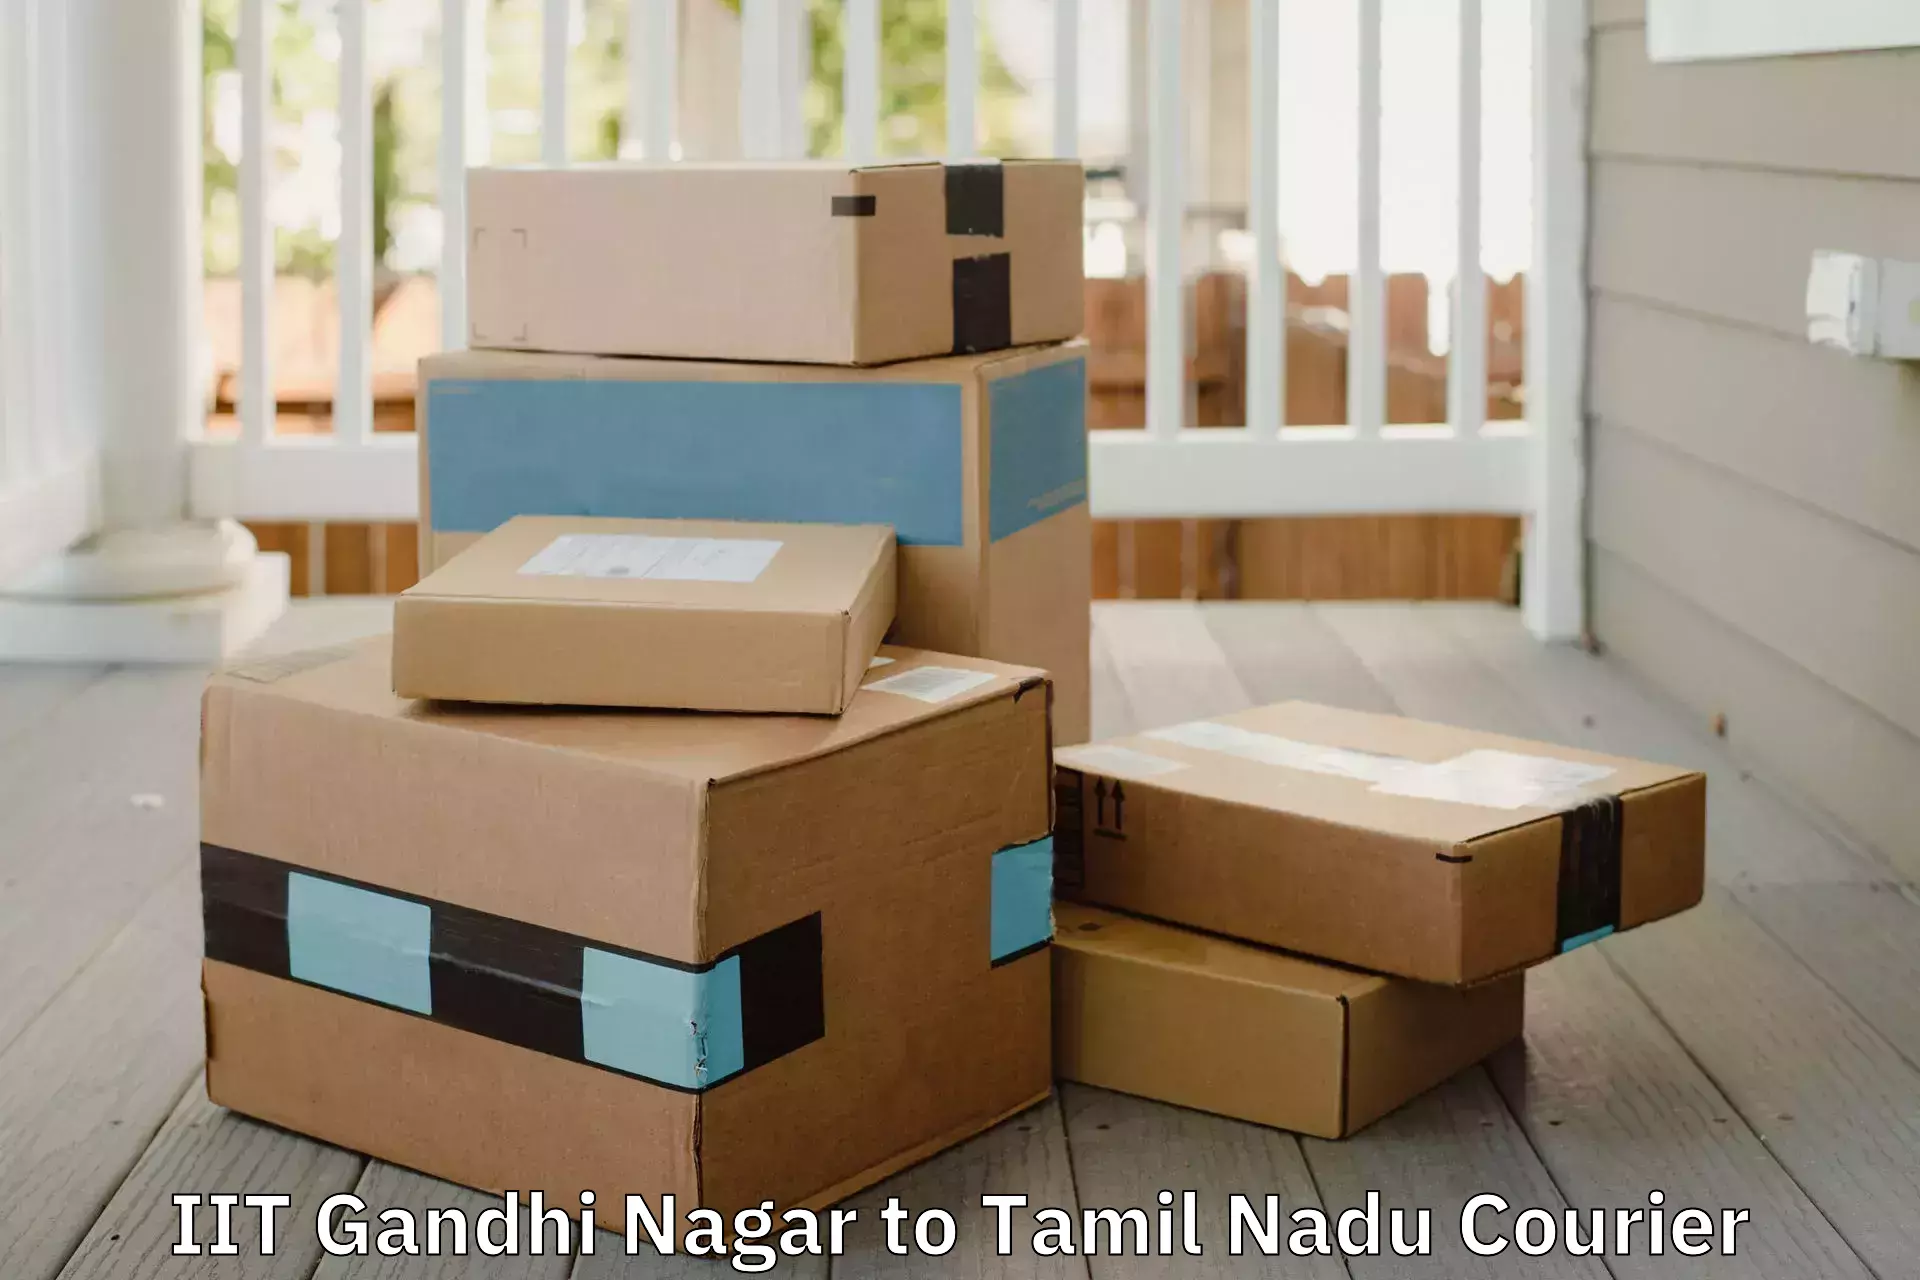 Household moving companies in IIT Gandhi Nagar to Tamil Nadu